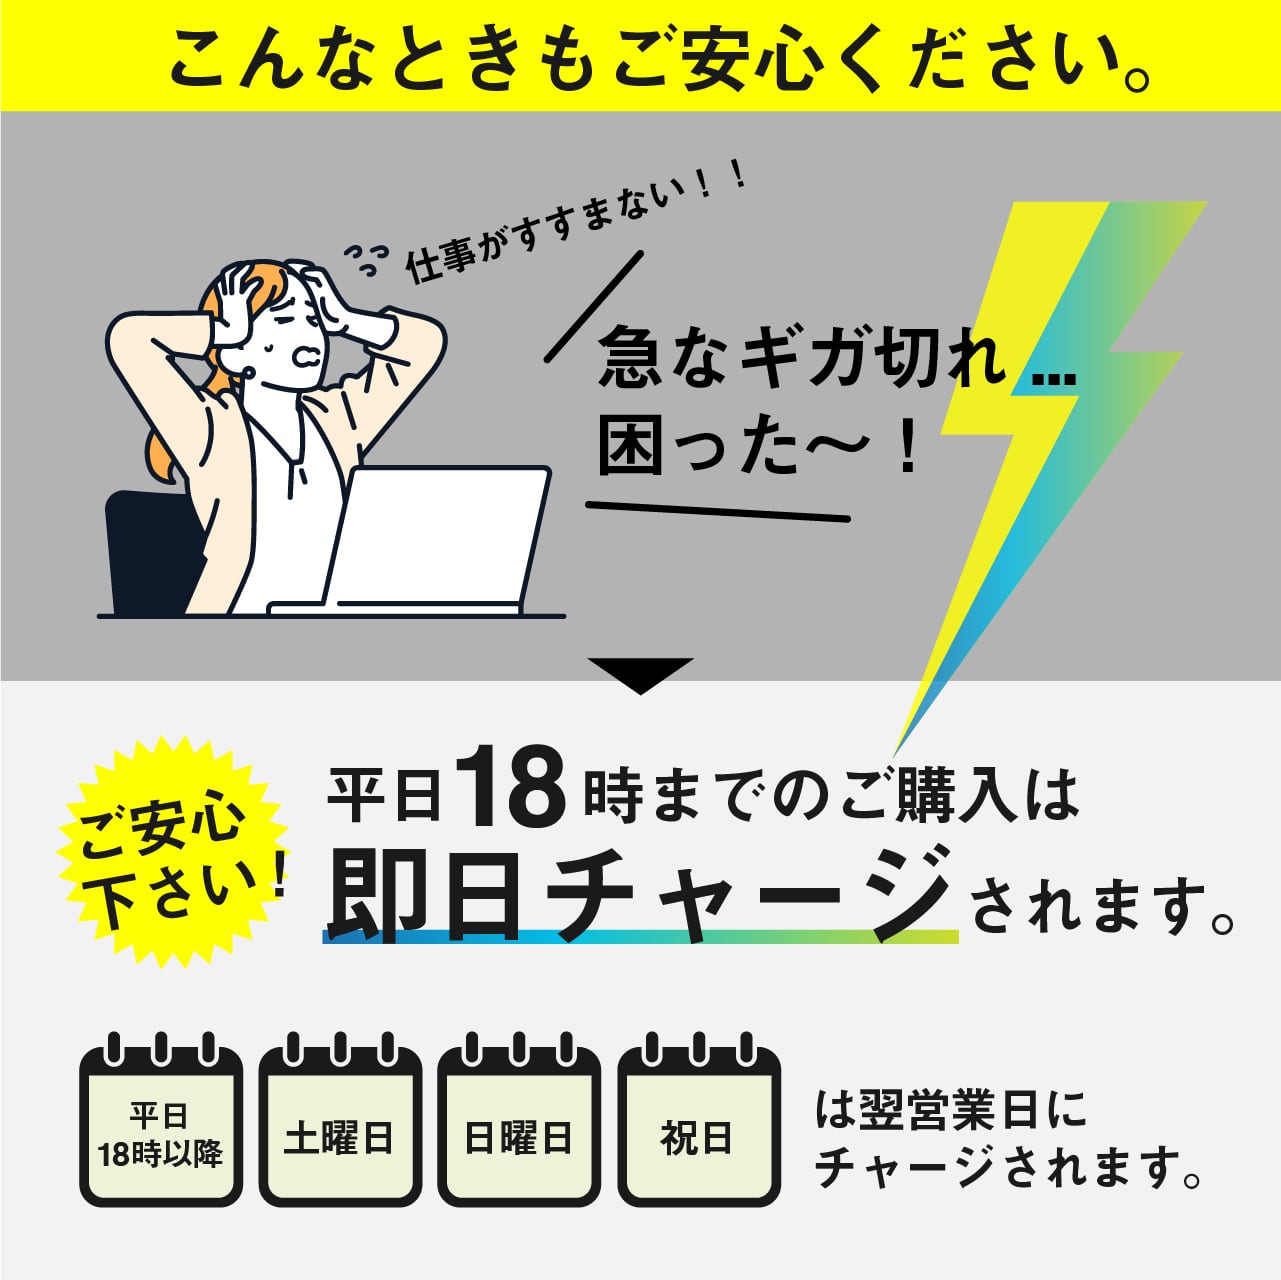 ★Windows10 Pro TOSHIBAノートパソコン★初期設定済み★